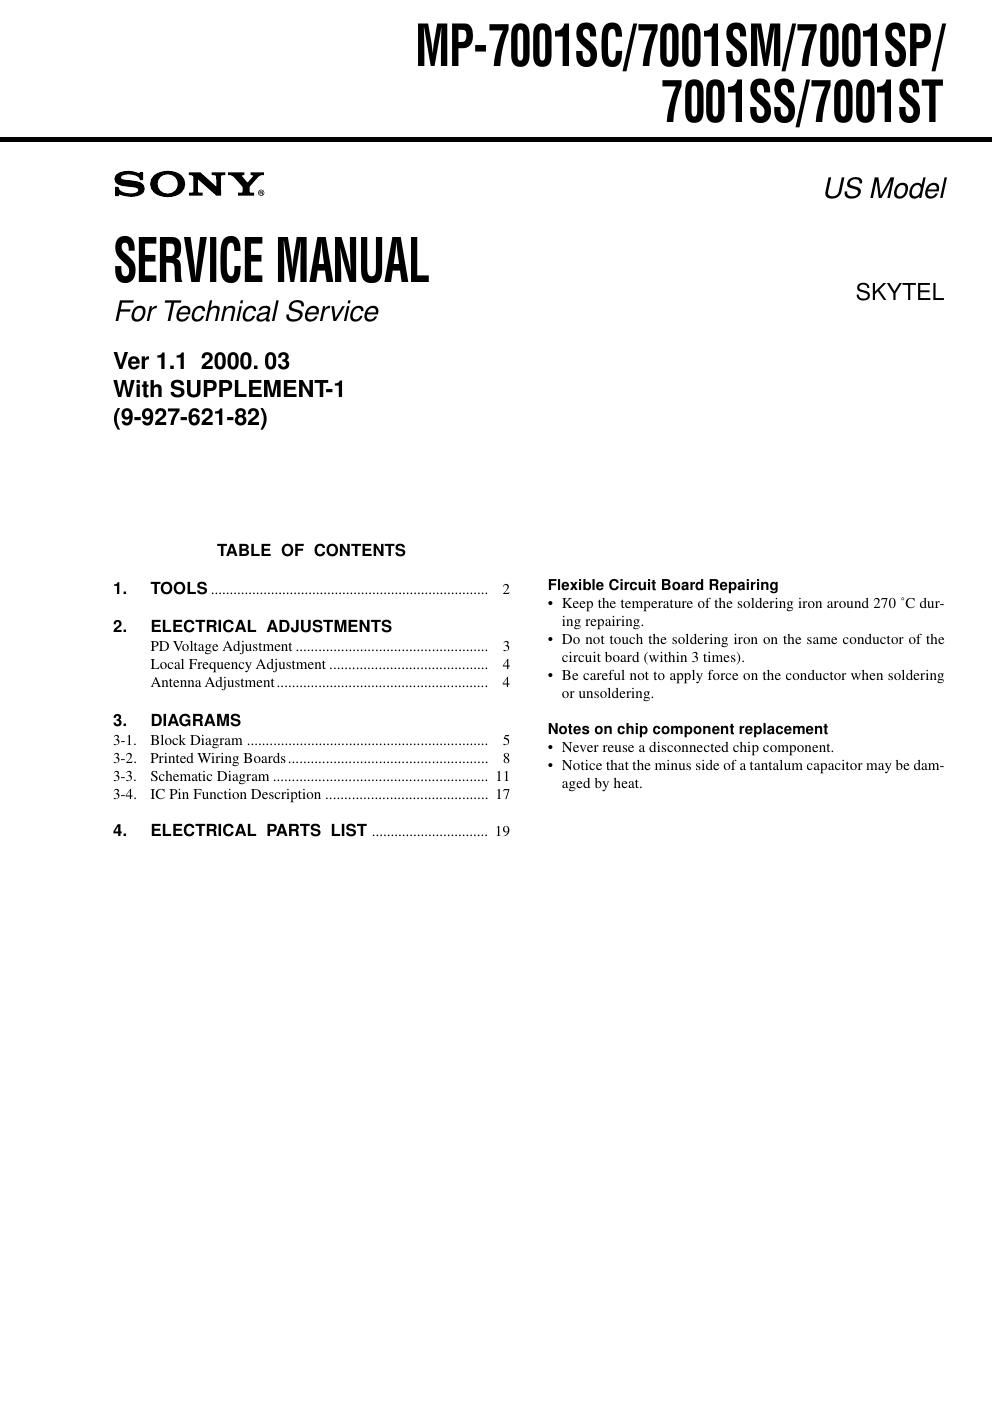 sony mp 7001 sc service manual